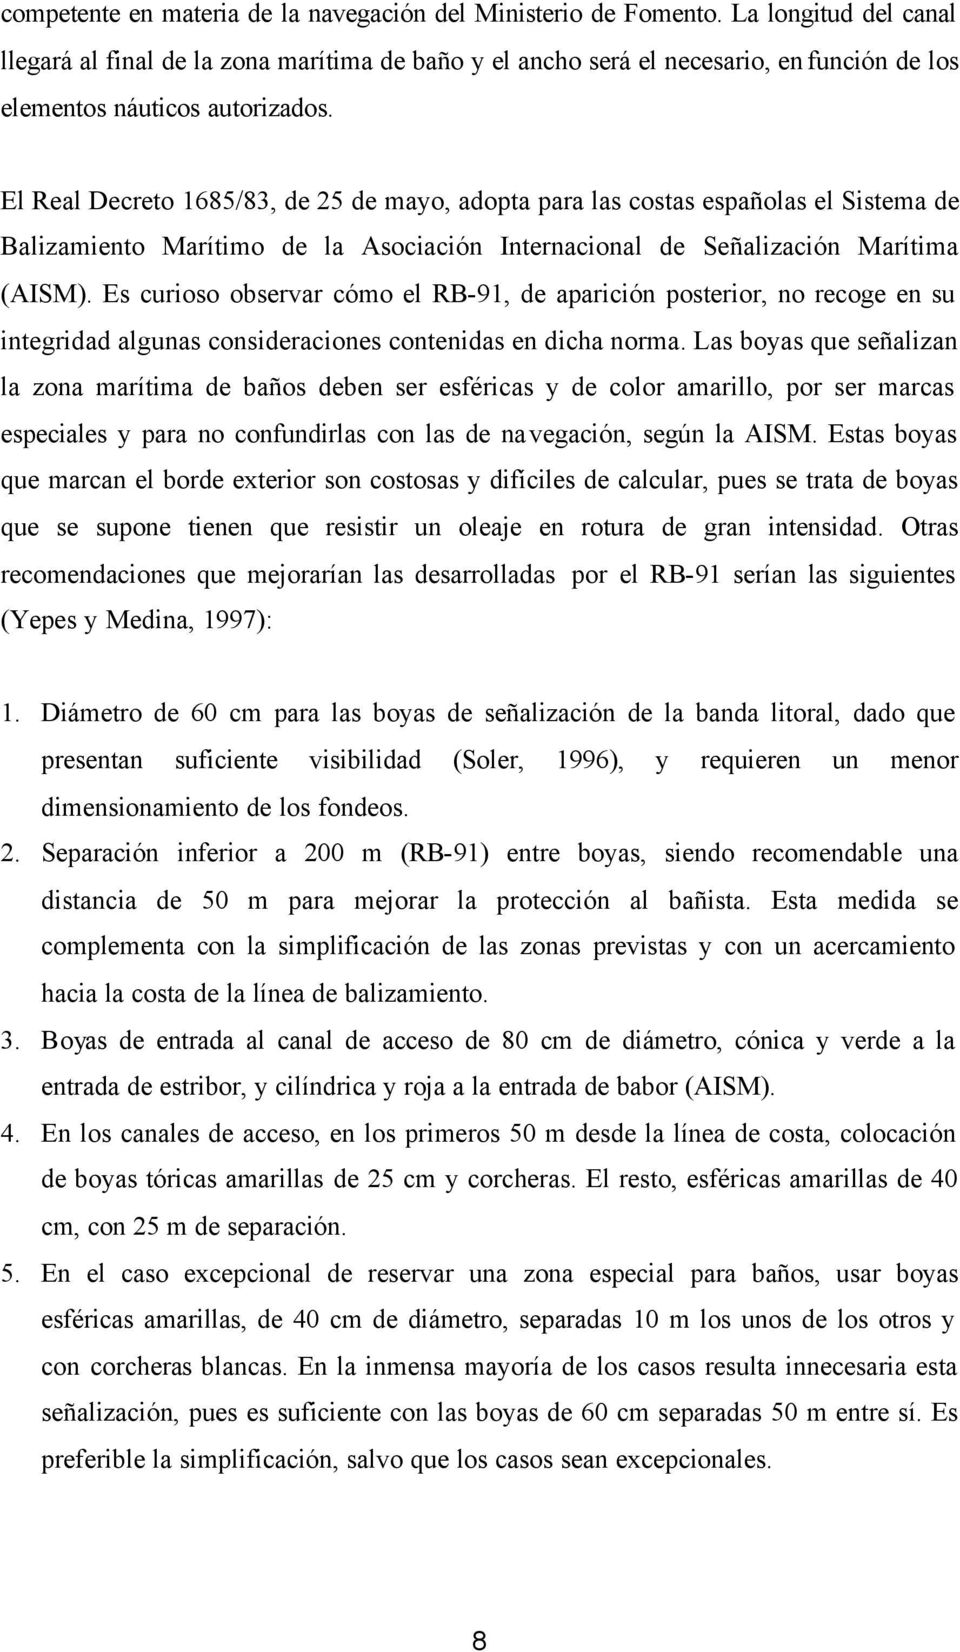 El Real Decreto 1685/83, de 25 de mayo, adopta para las costas españolas el Sistema de Balizamiento Marítimo de la Asociación Internacional de Señalización Marítima (AISM).